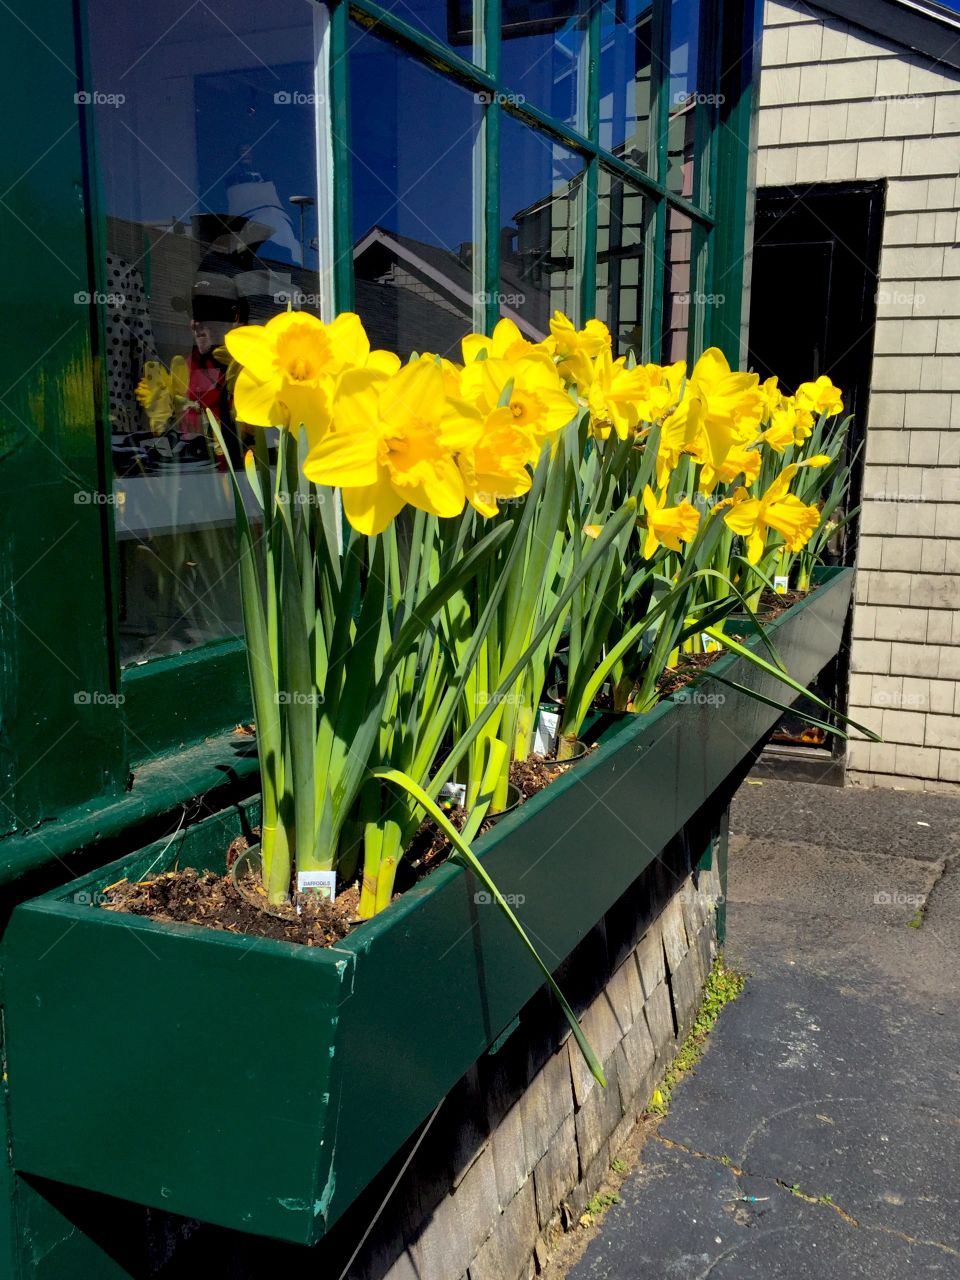 Daffodil days